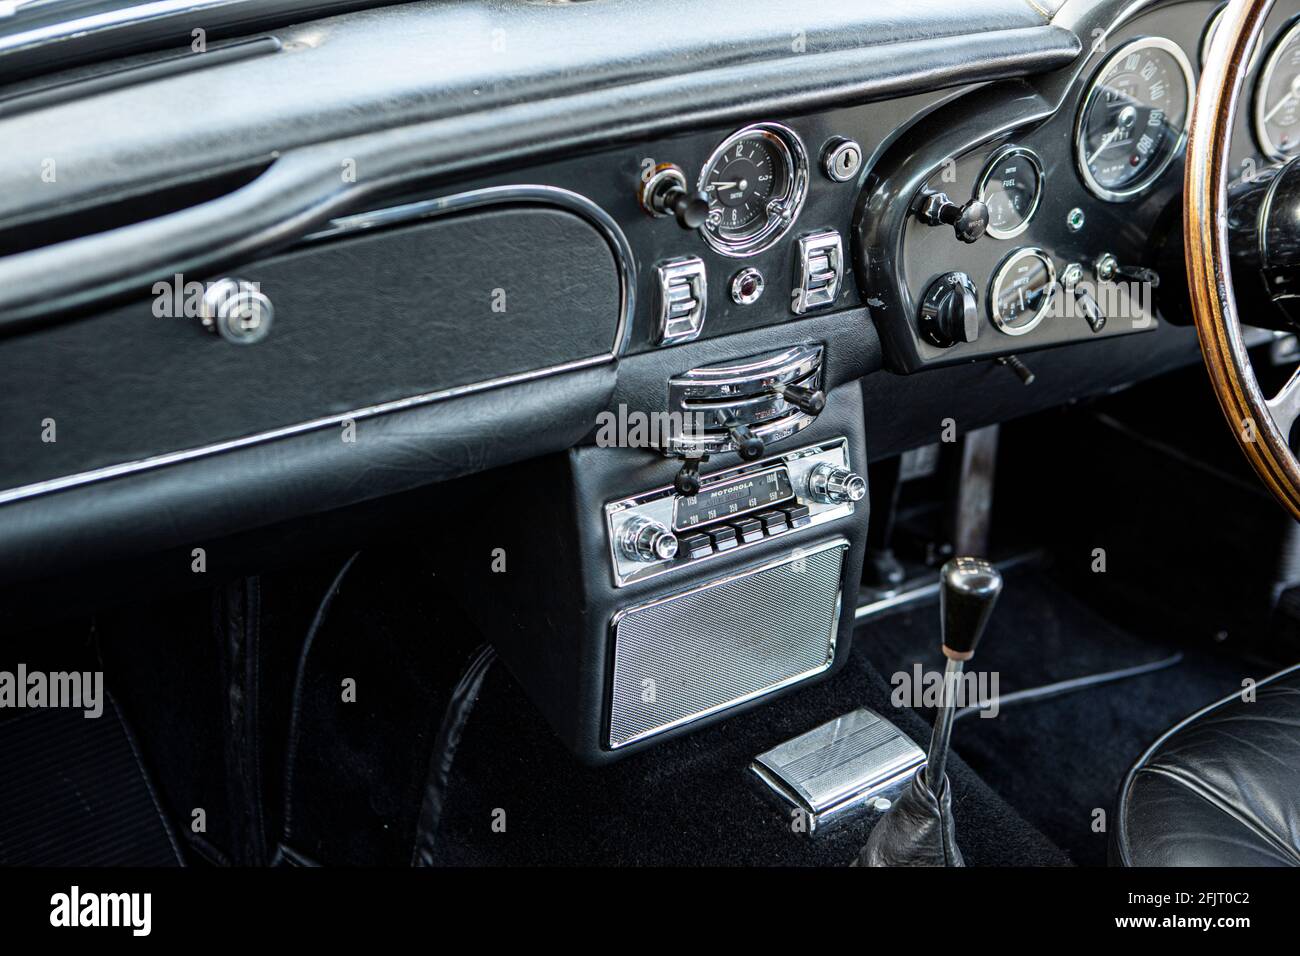 1965 Tableau de bord Aston Martin DB5 affichant la radio Motorola Photo  Stock - Alamy